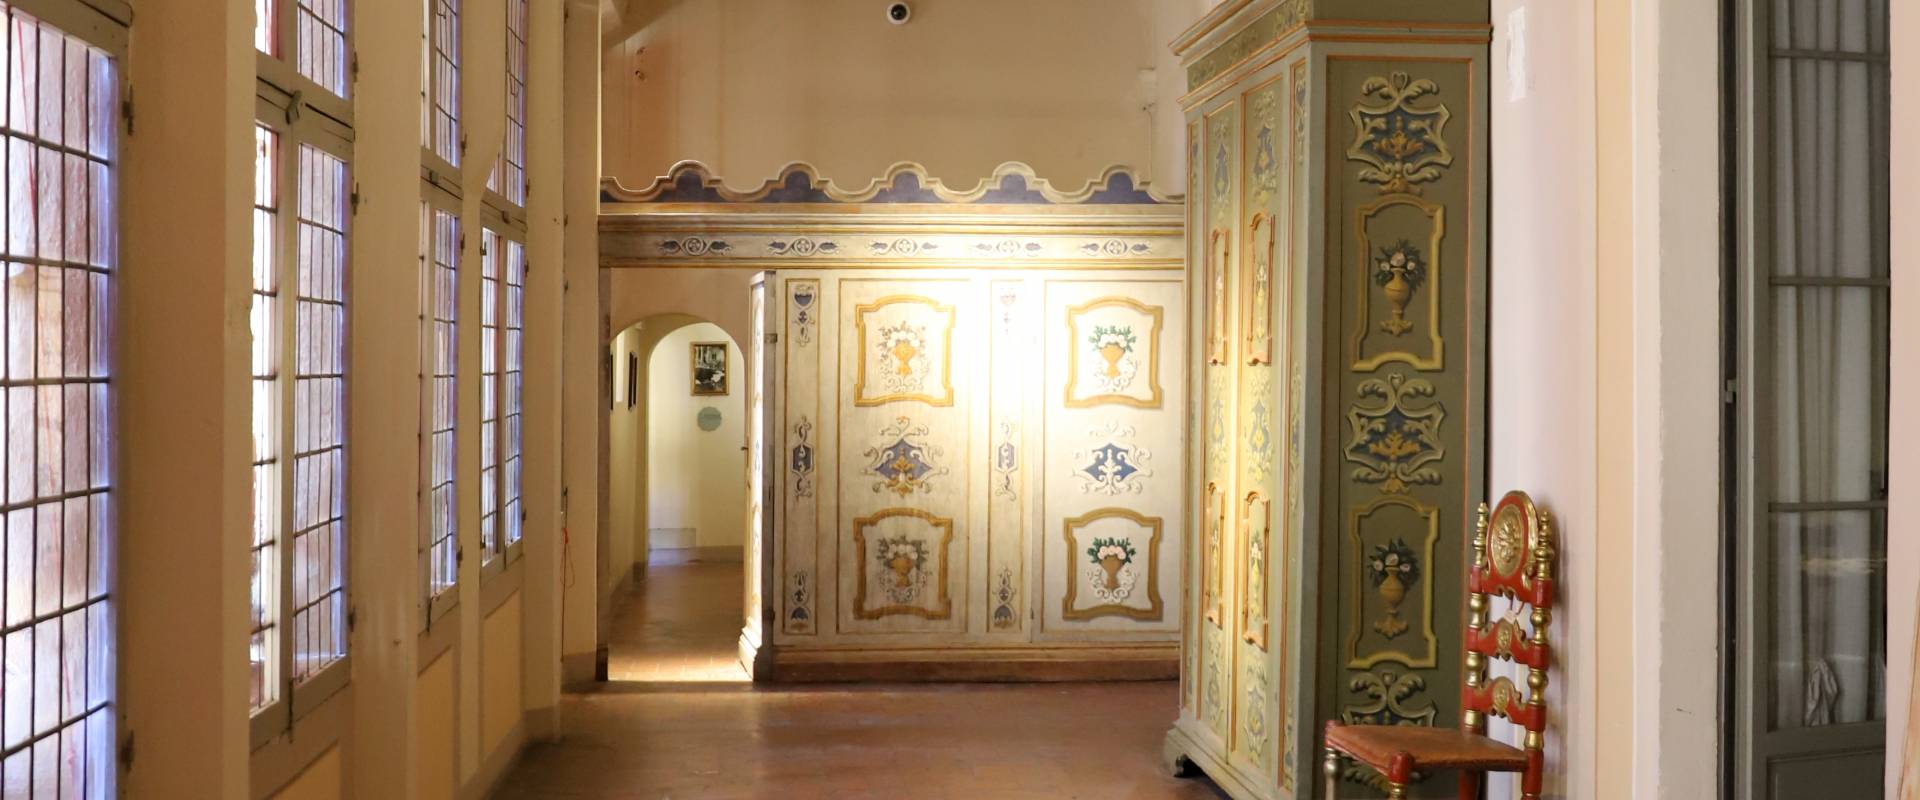 Imola, palazzo tozzoni, interno, corridoio con armadi photo by Sailko